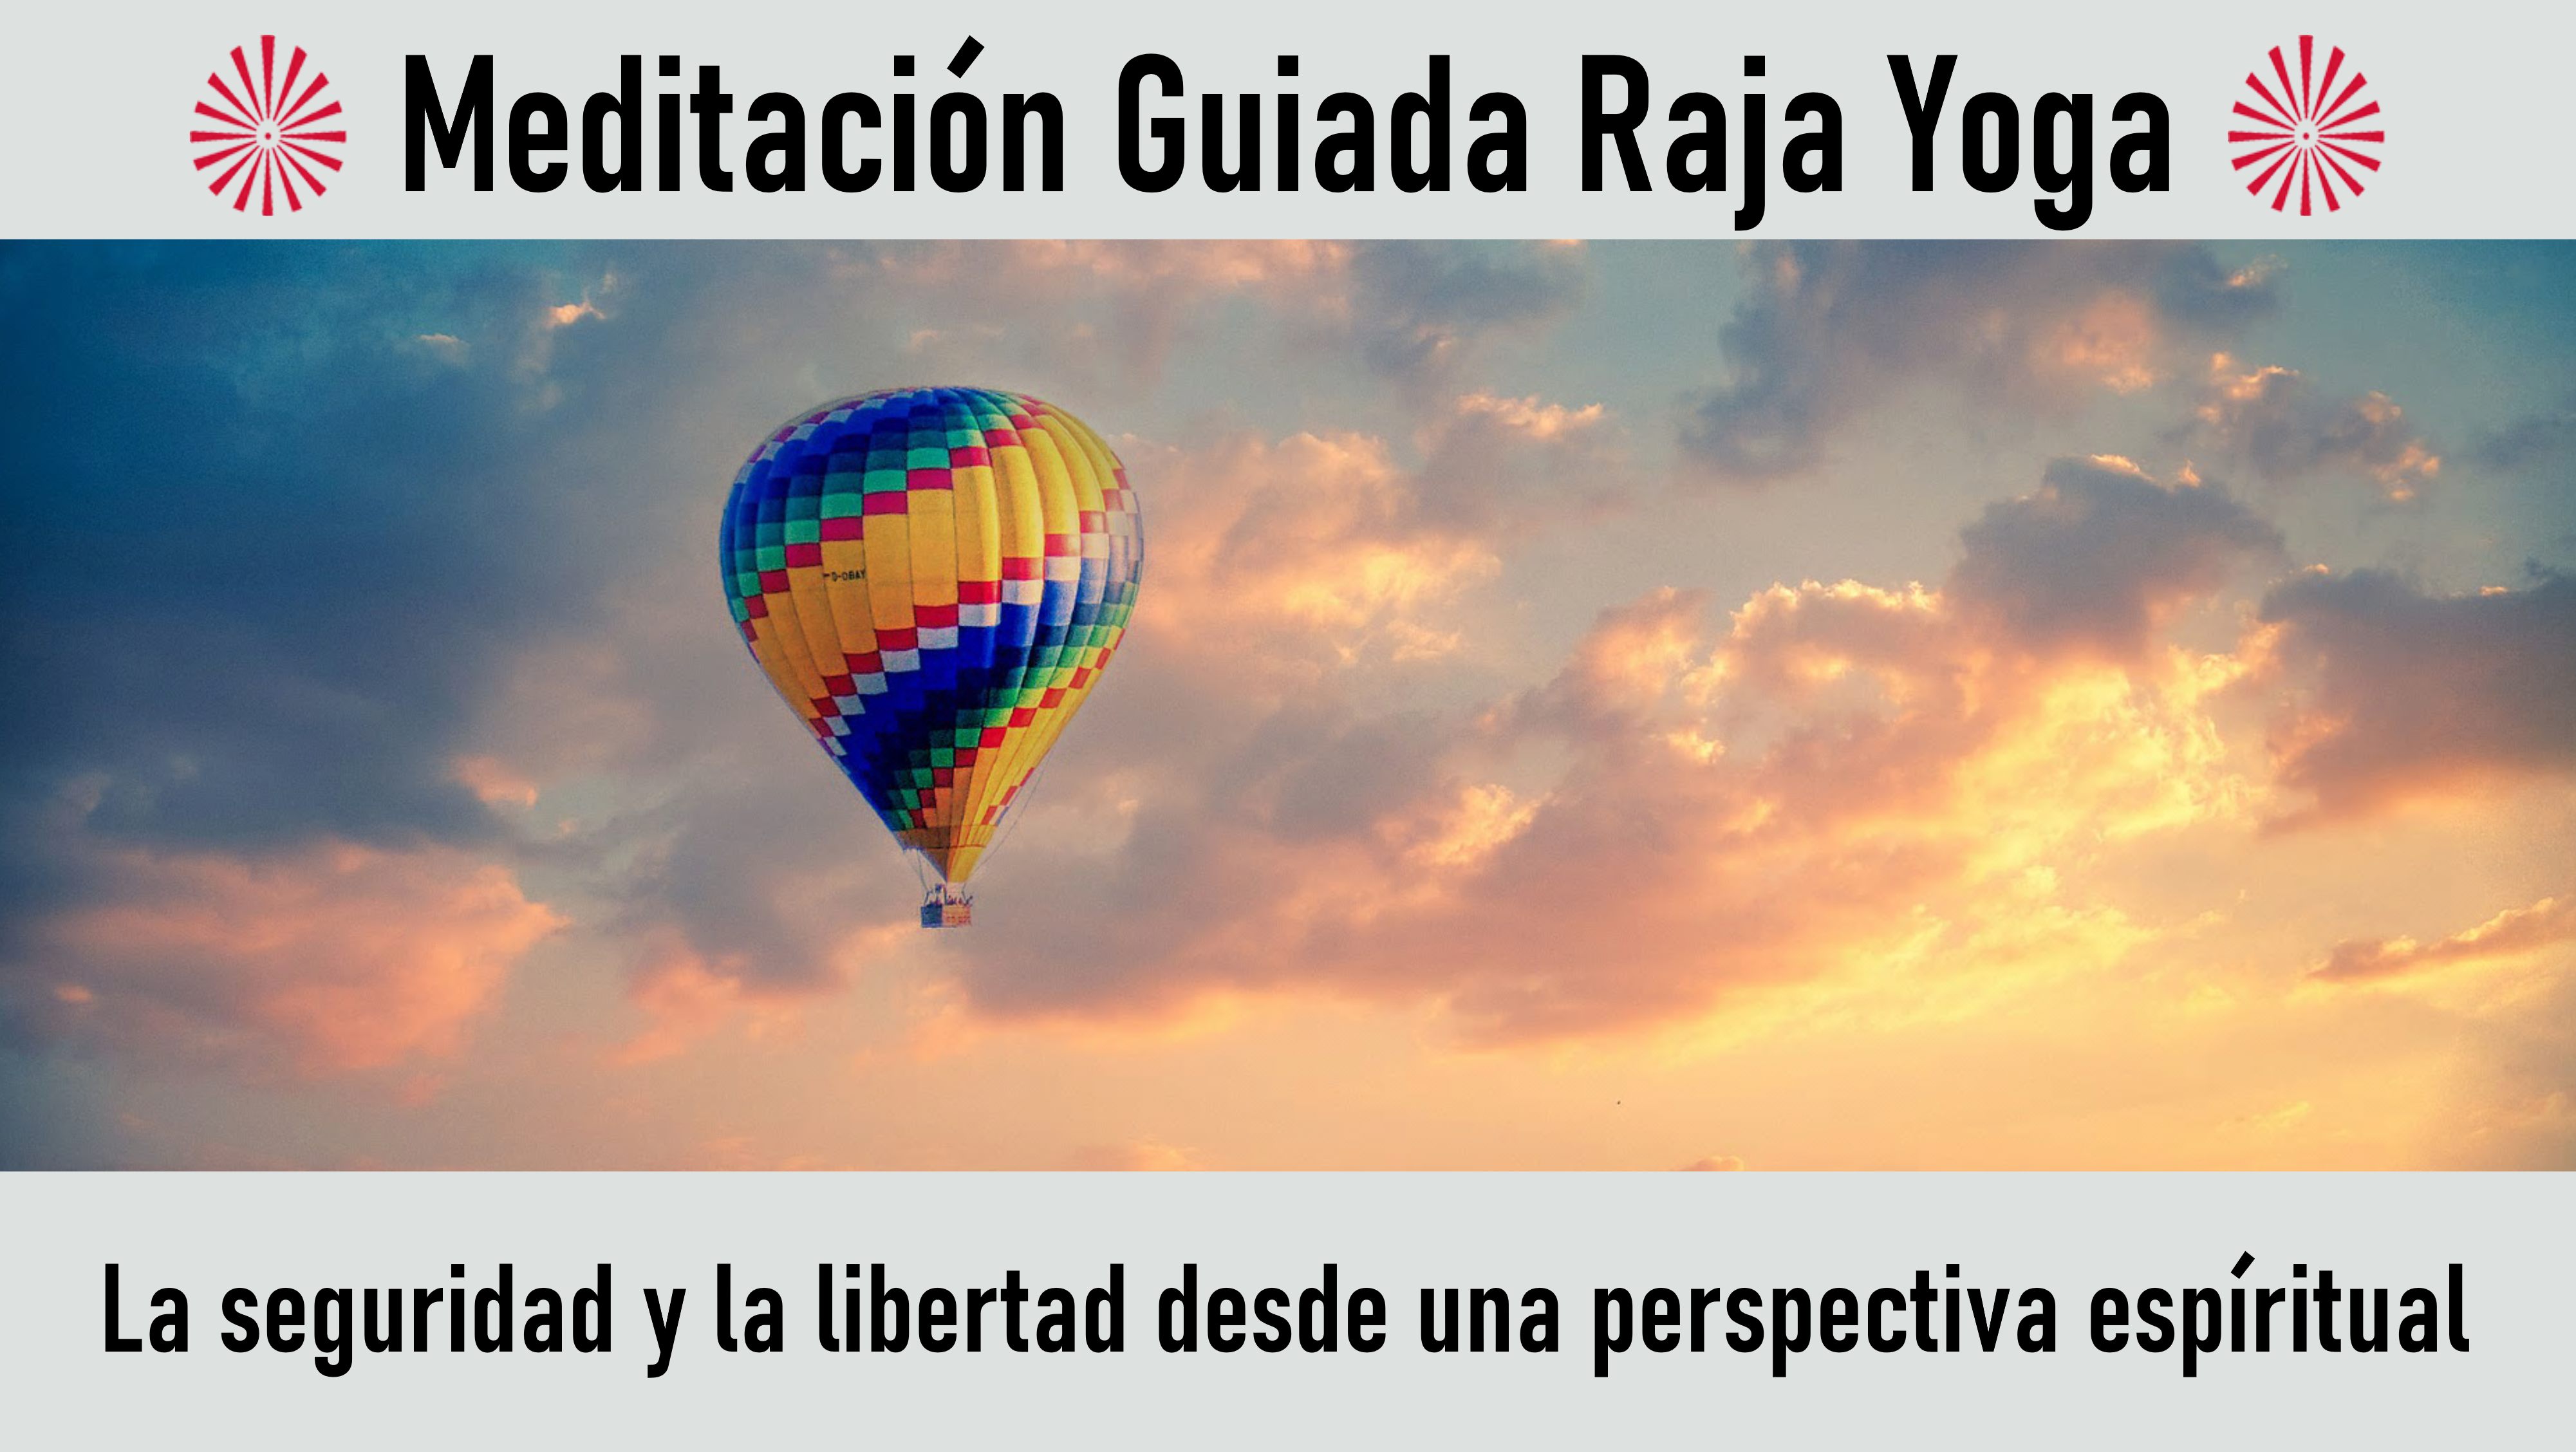 Meditación Raja Yoga: La seguridad y la libertad desde una perspectiva espíritual (4 Agosto 2020) On-line desde Mallorca